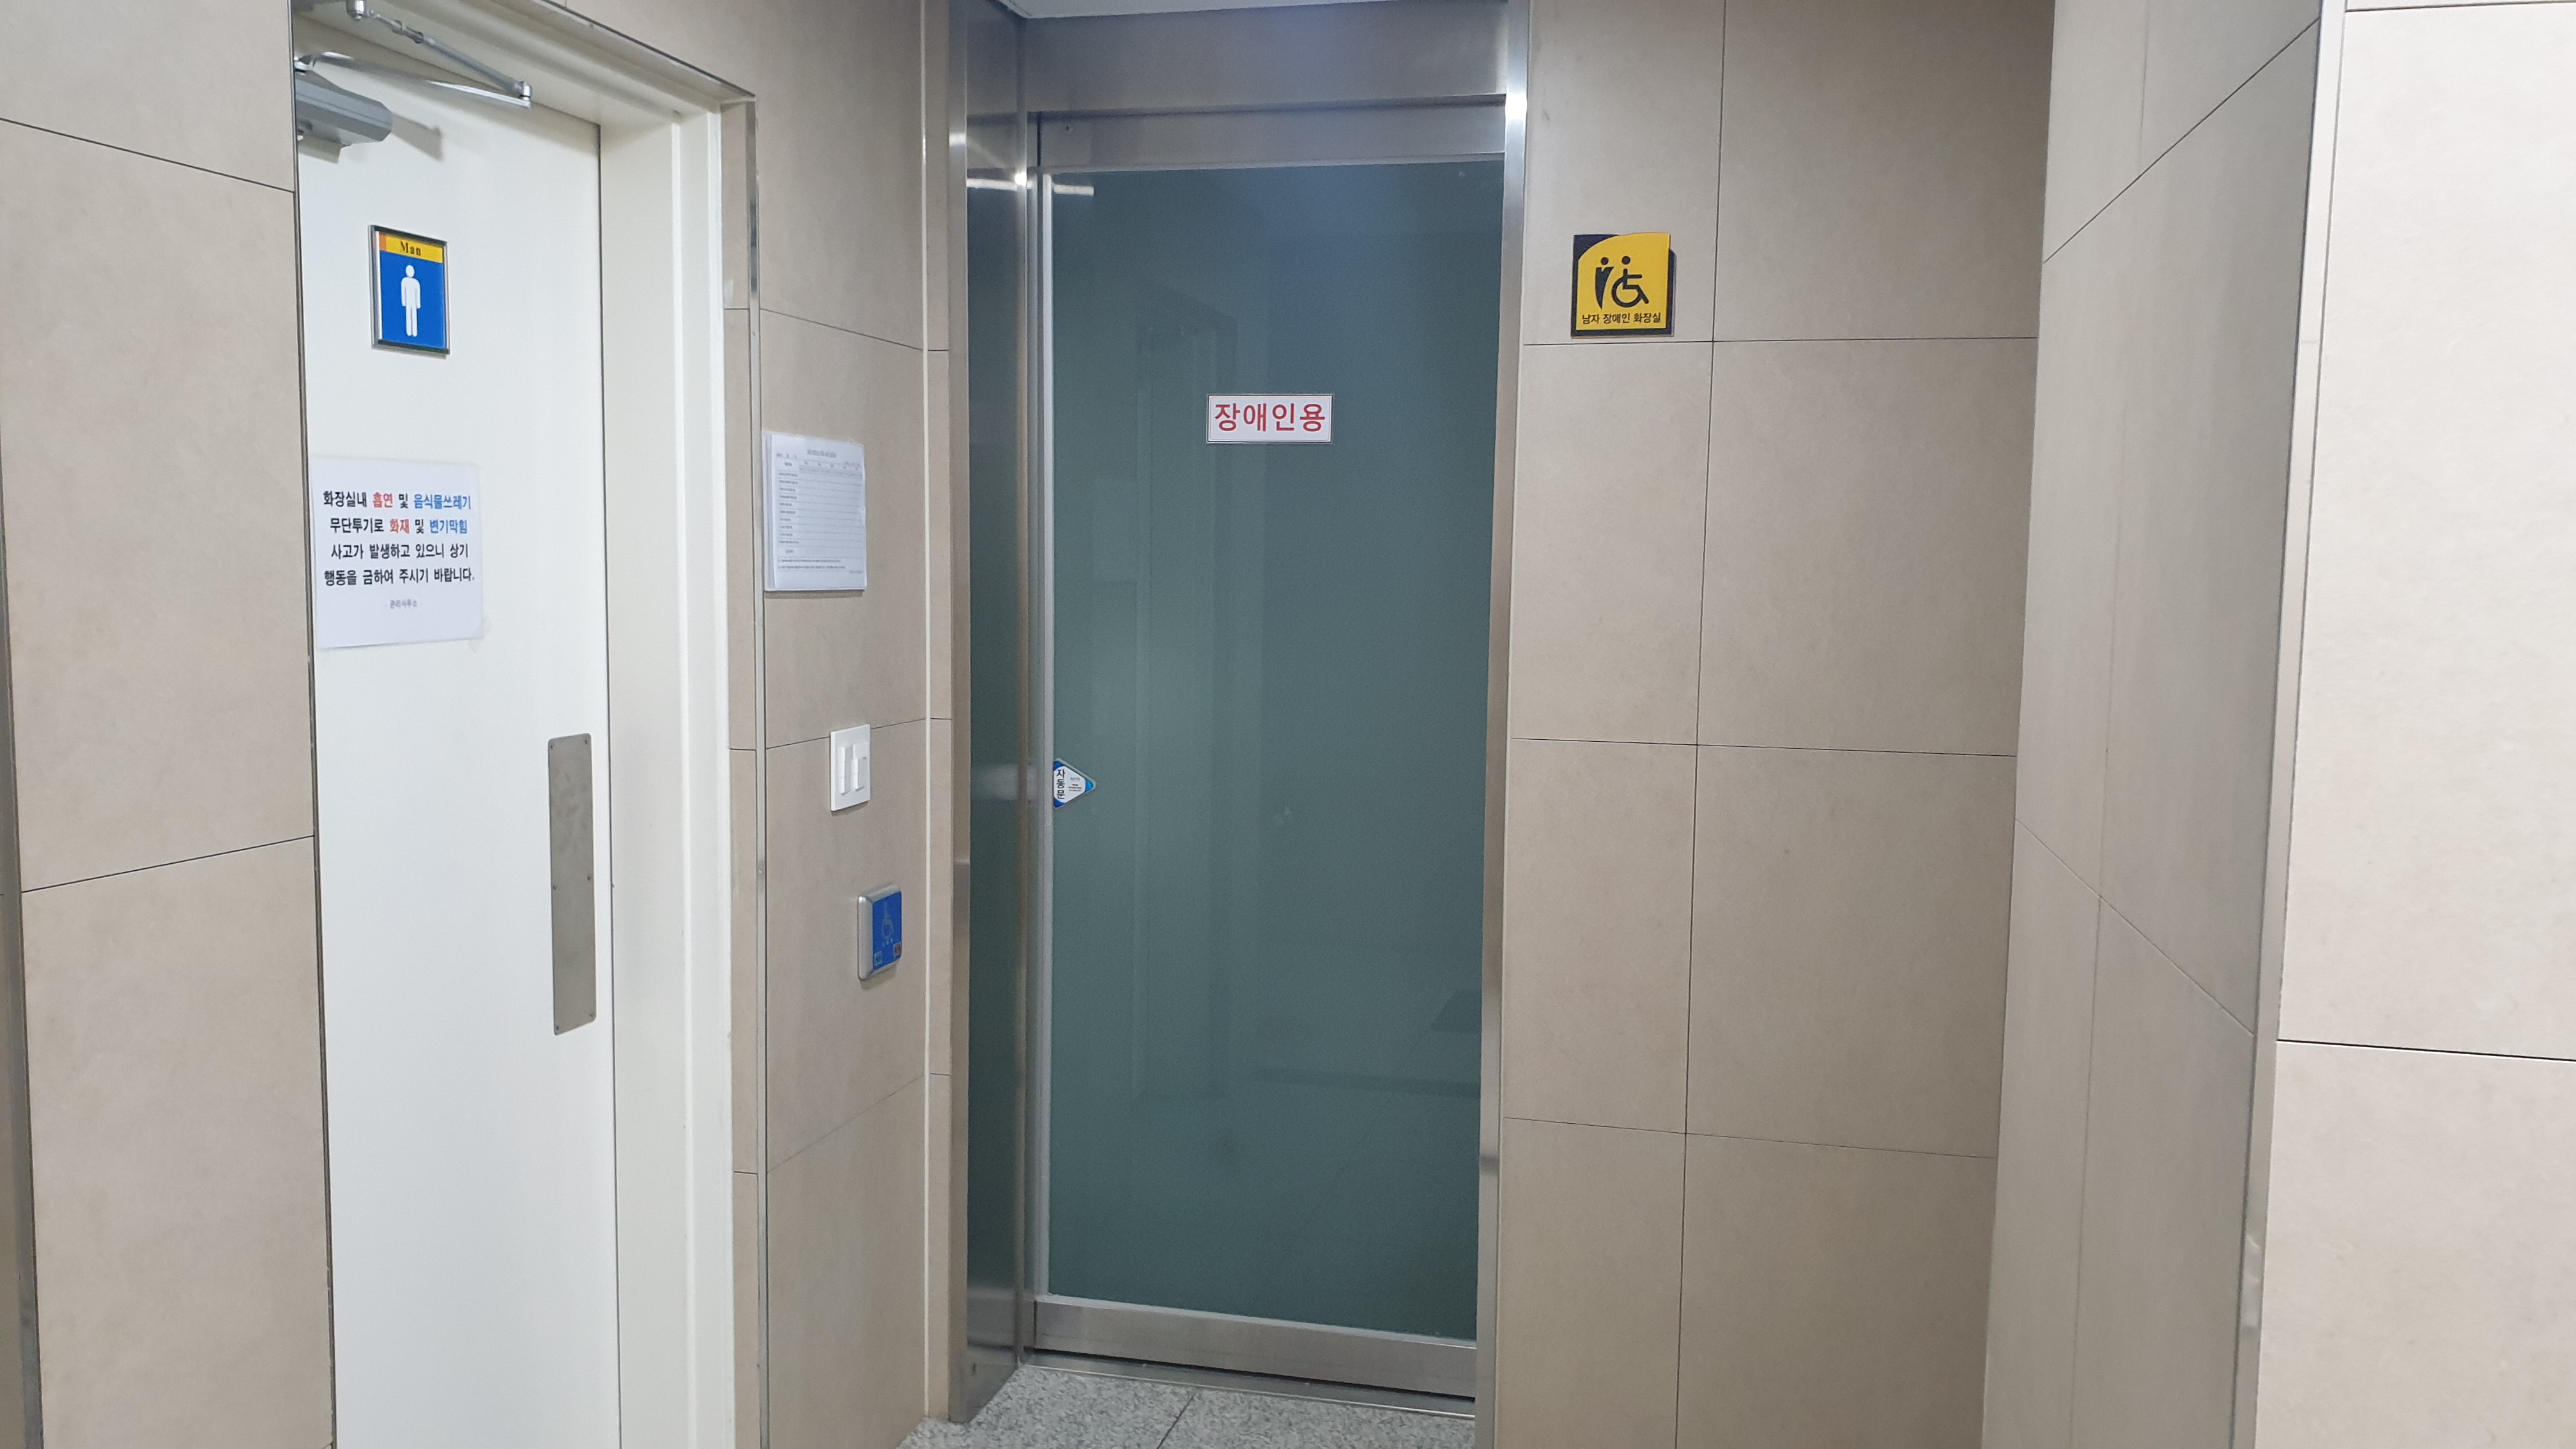 장애인 화장실1 : 만복국수 온수기가 설치된 장애인화장실